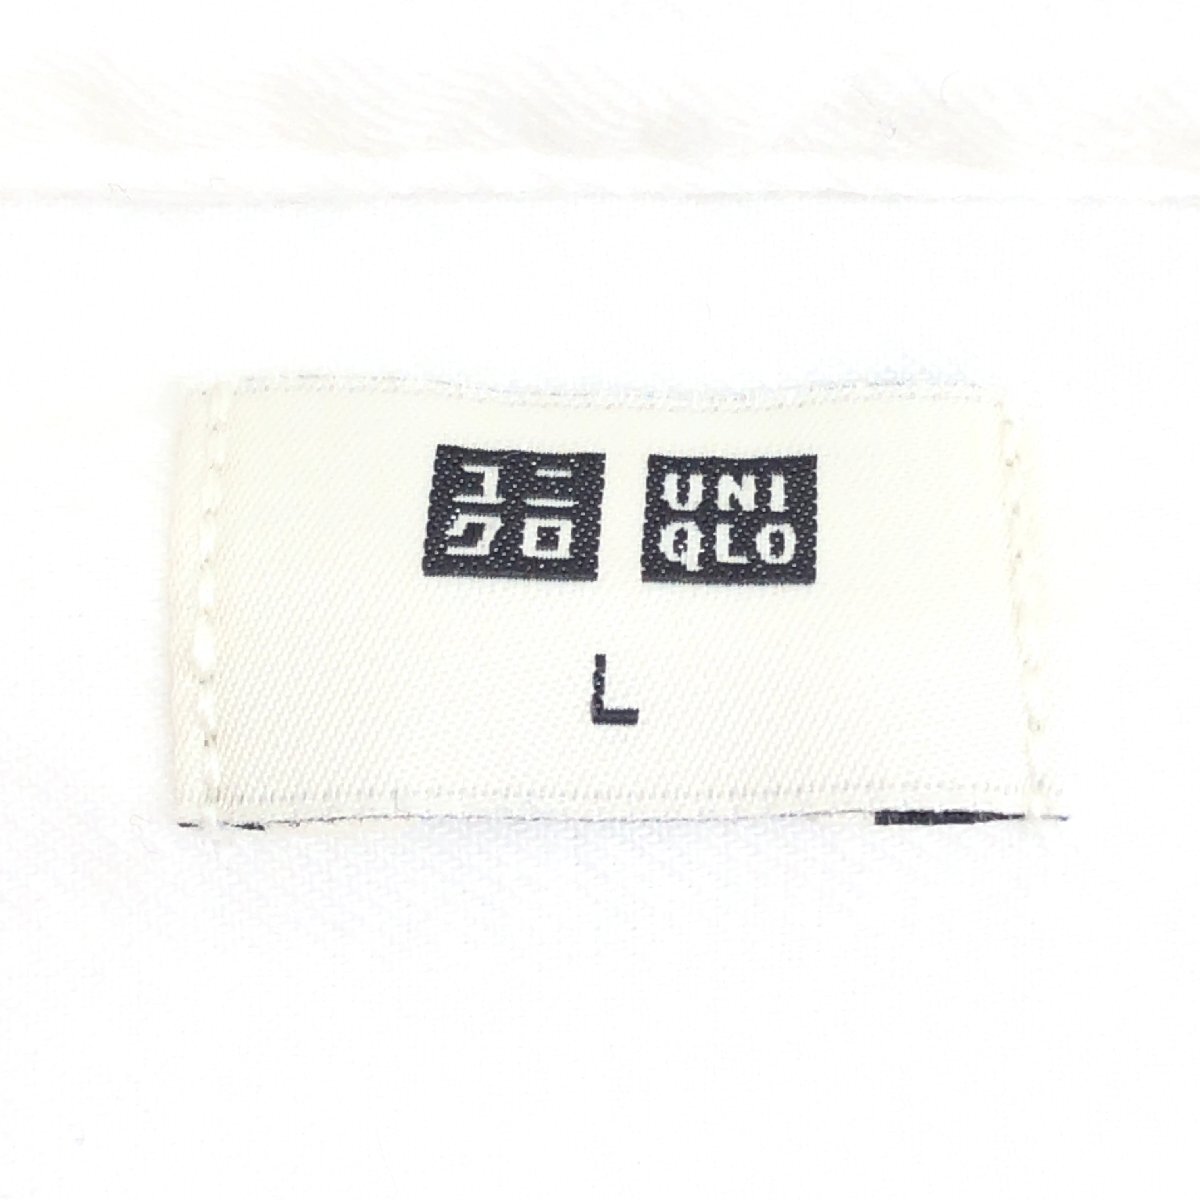 新品 UNIQLO ユニクロ フランネル スタンドカラー シャツ L 白 ホワイト 長袖 ネルシャツ バンドカラー 国内正規品 未使用_画像4